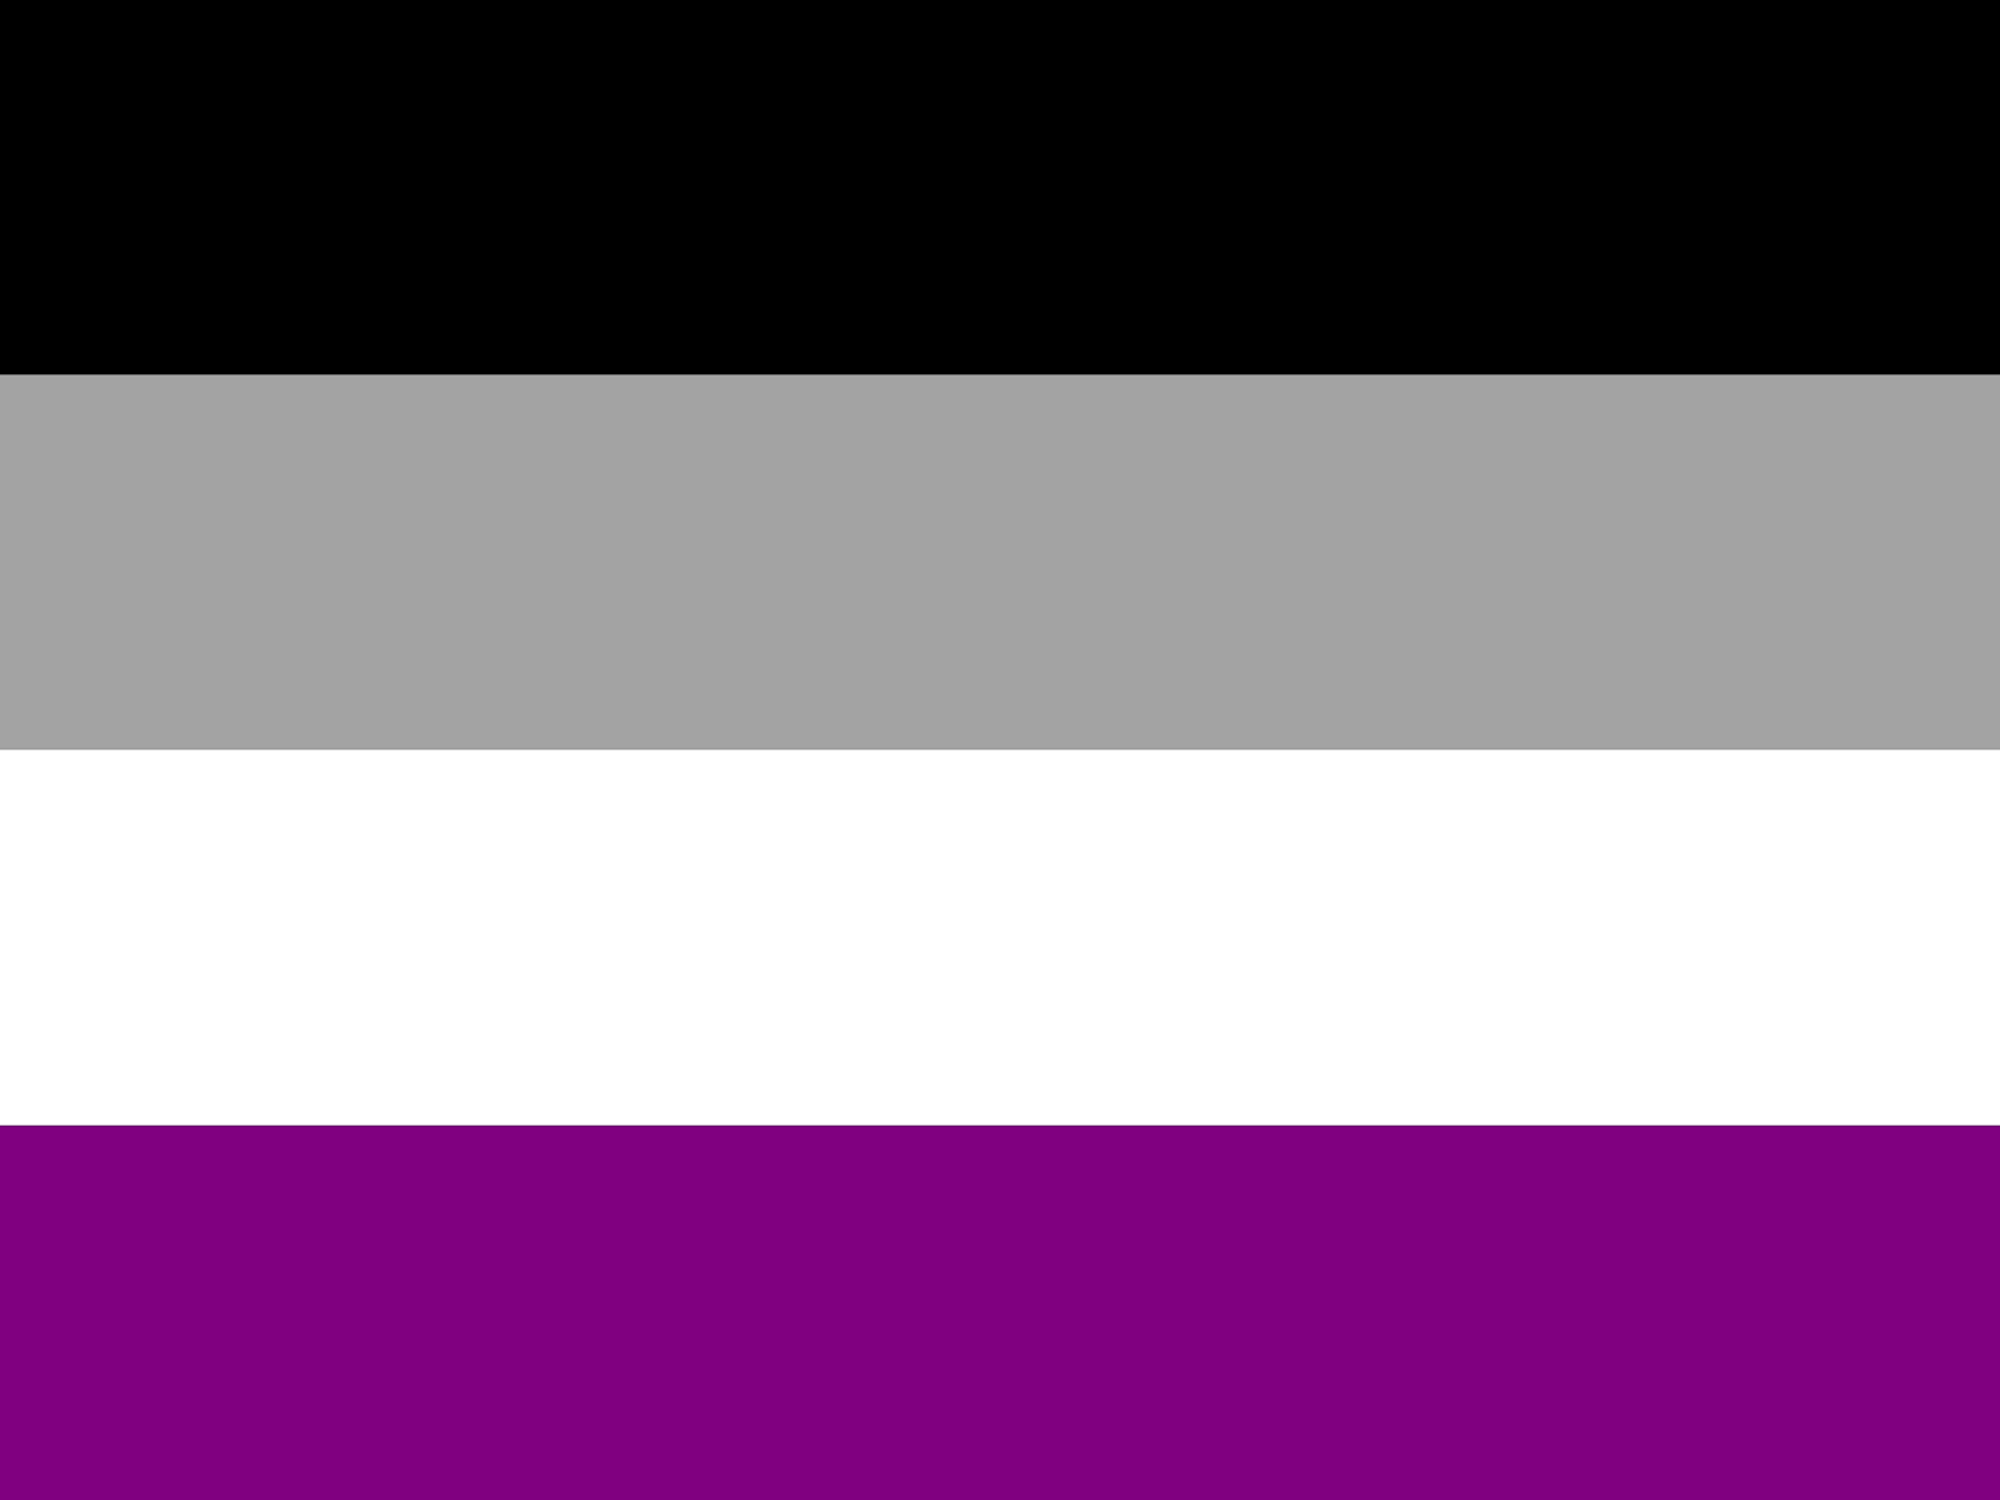 Farben, die für Asexualität stehen.